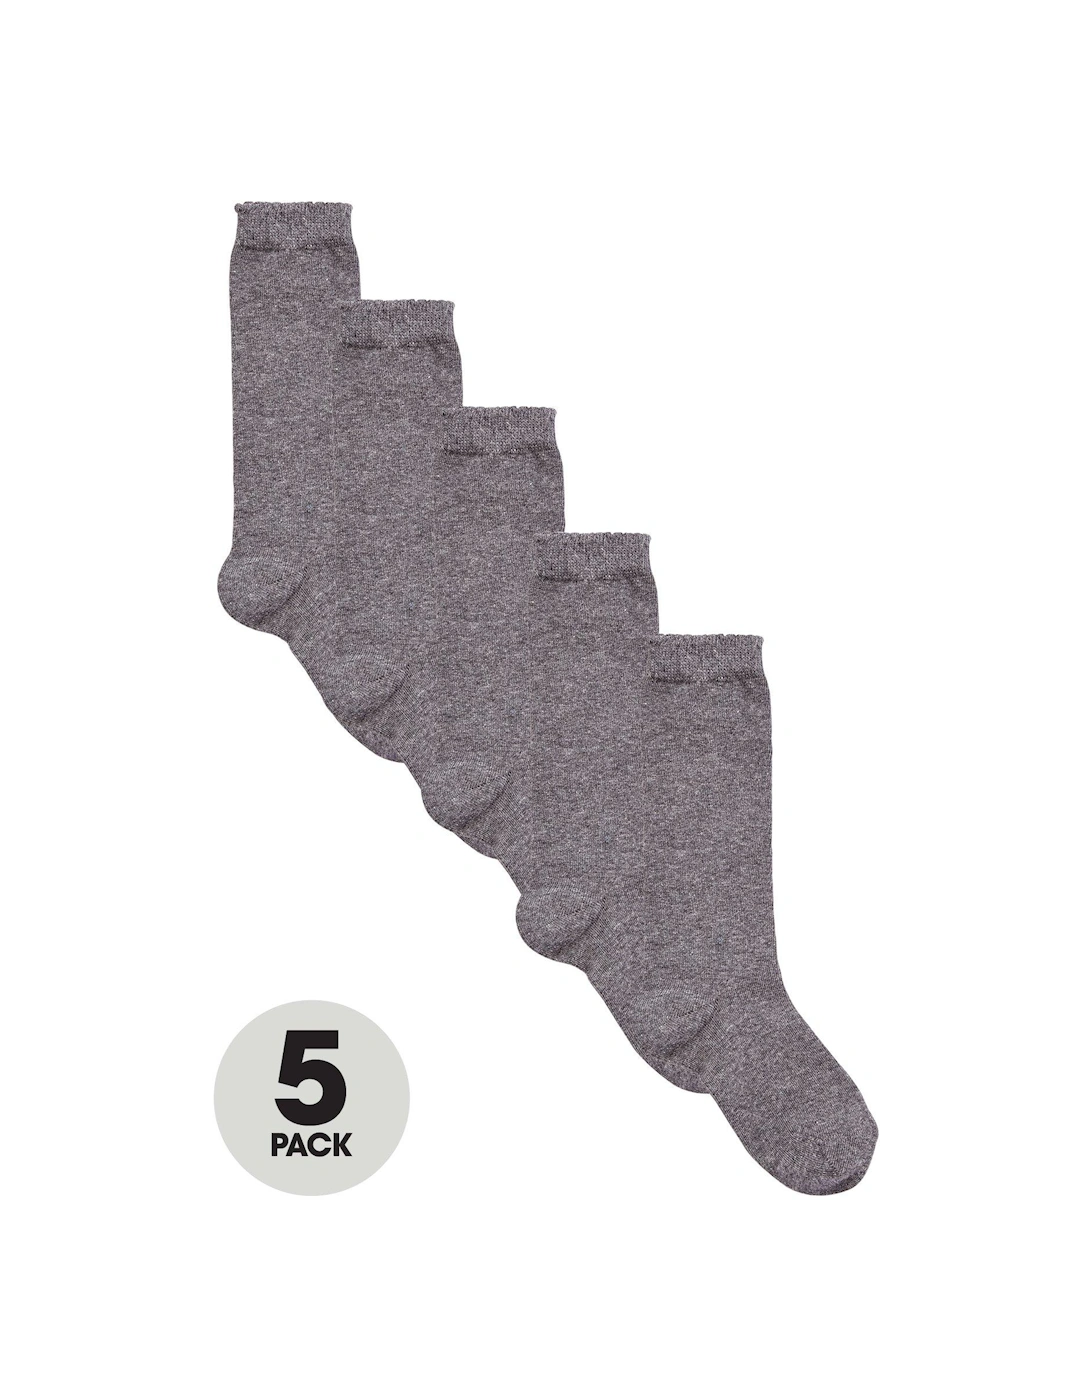 Girls Knee High Socks 5 Pack - Grey, 2 of 1